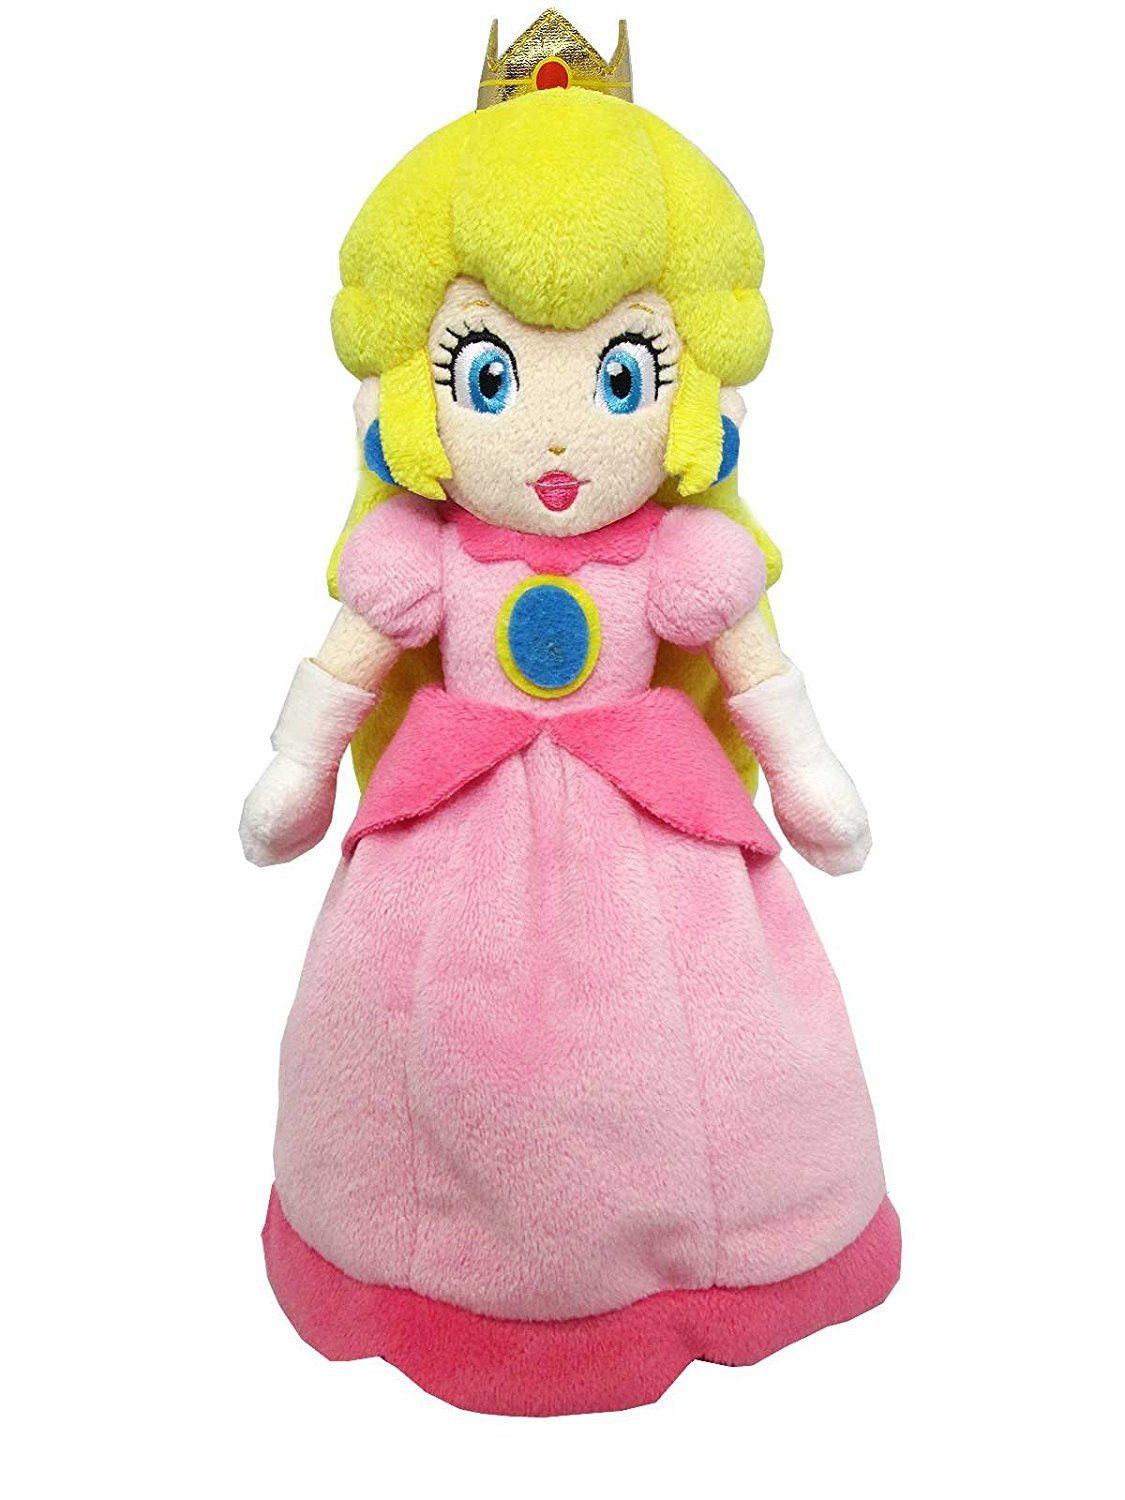 J2Games.com | Nintendo Plush 10-inch Princess Peach (Brand New).